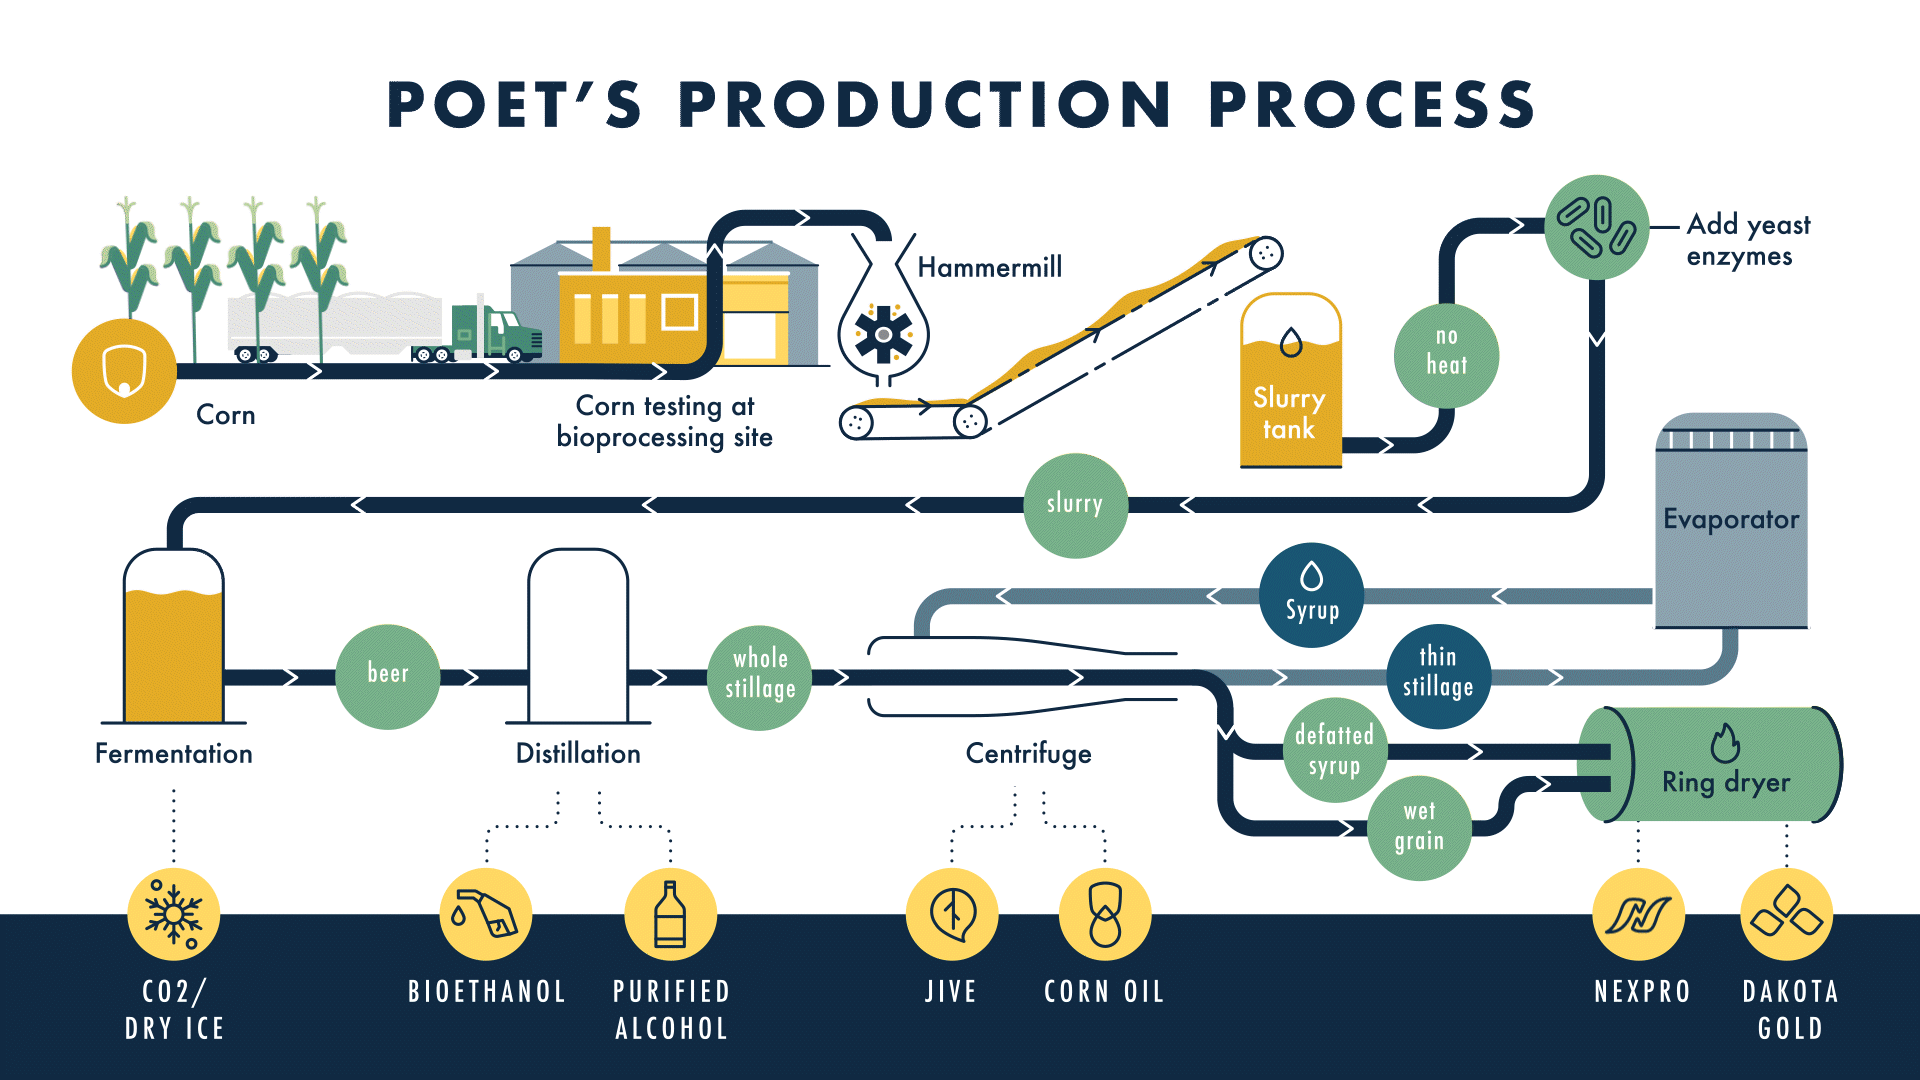 POET's Production Process